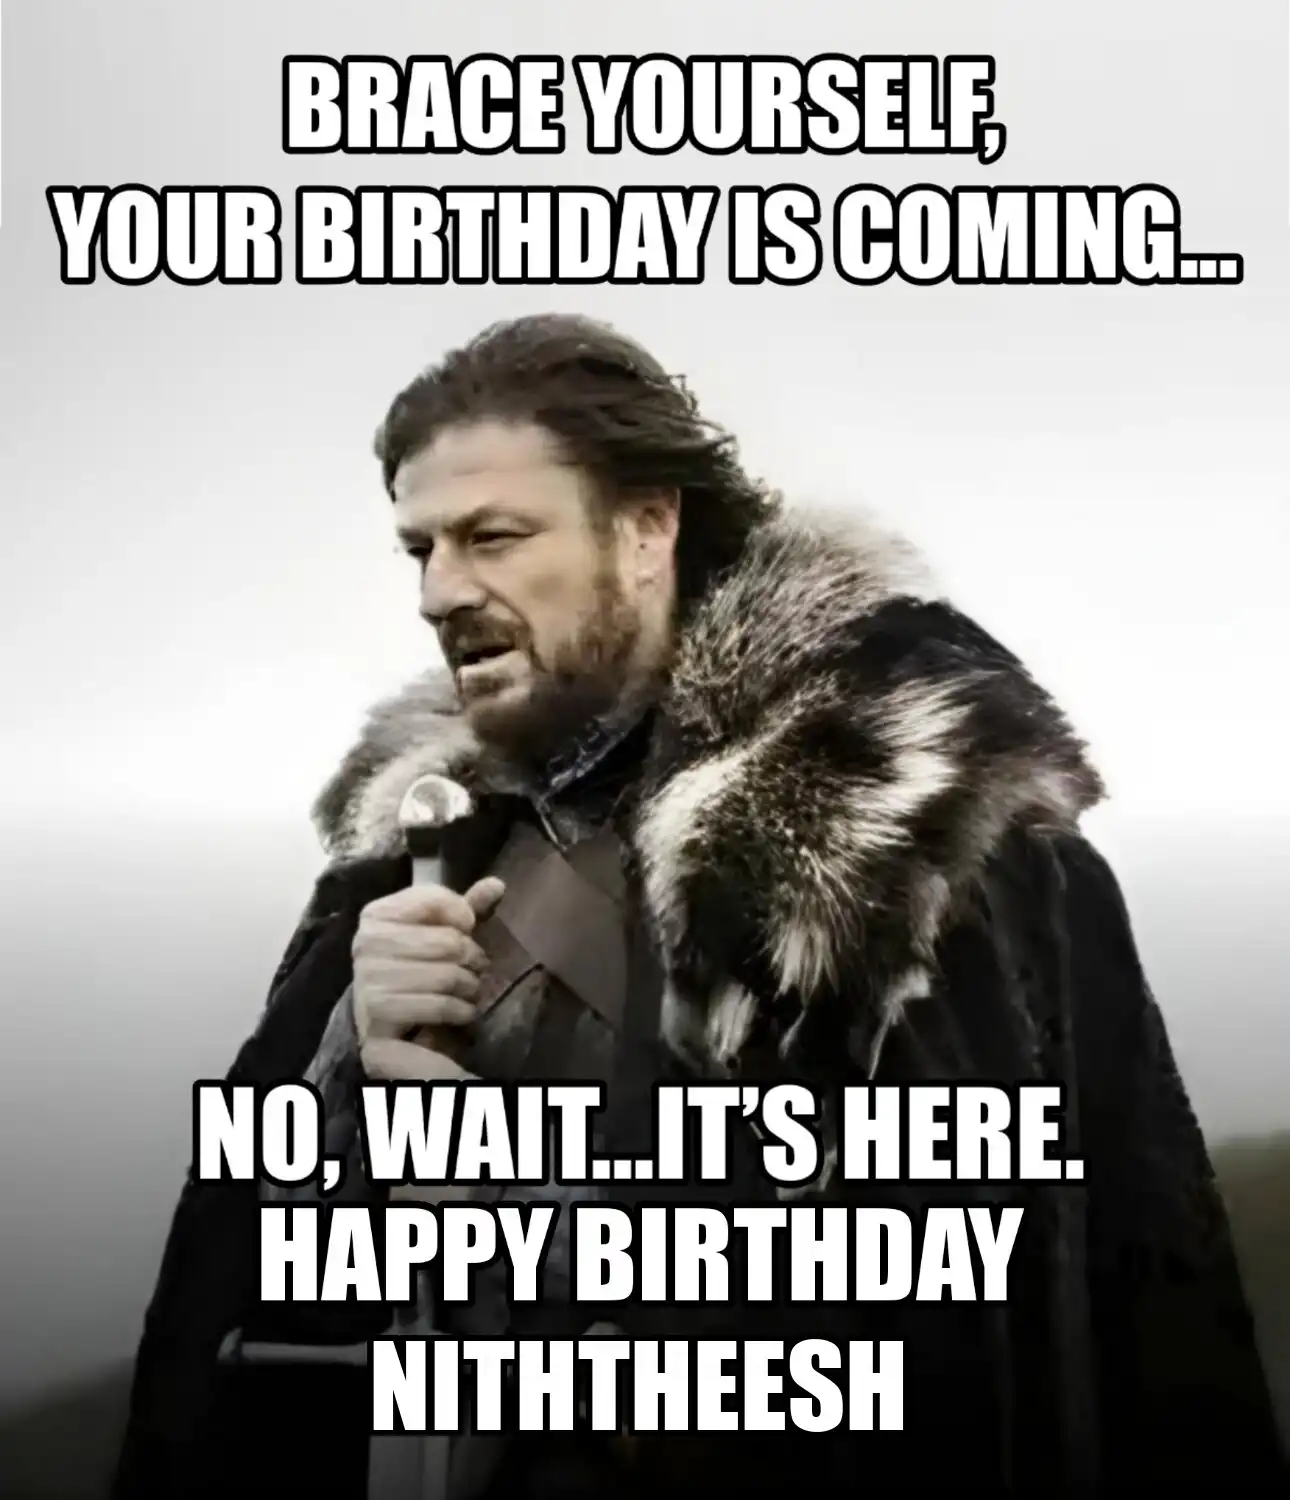 Happy Birthday Niththeesh Brace Yourself Your Birthday Is Coming Meme